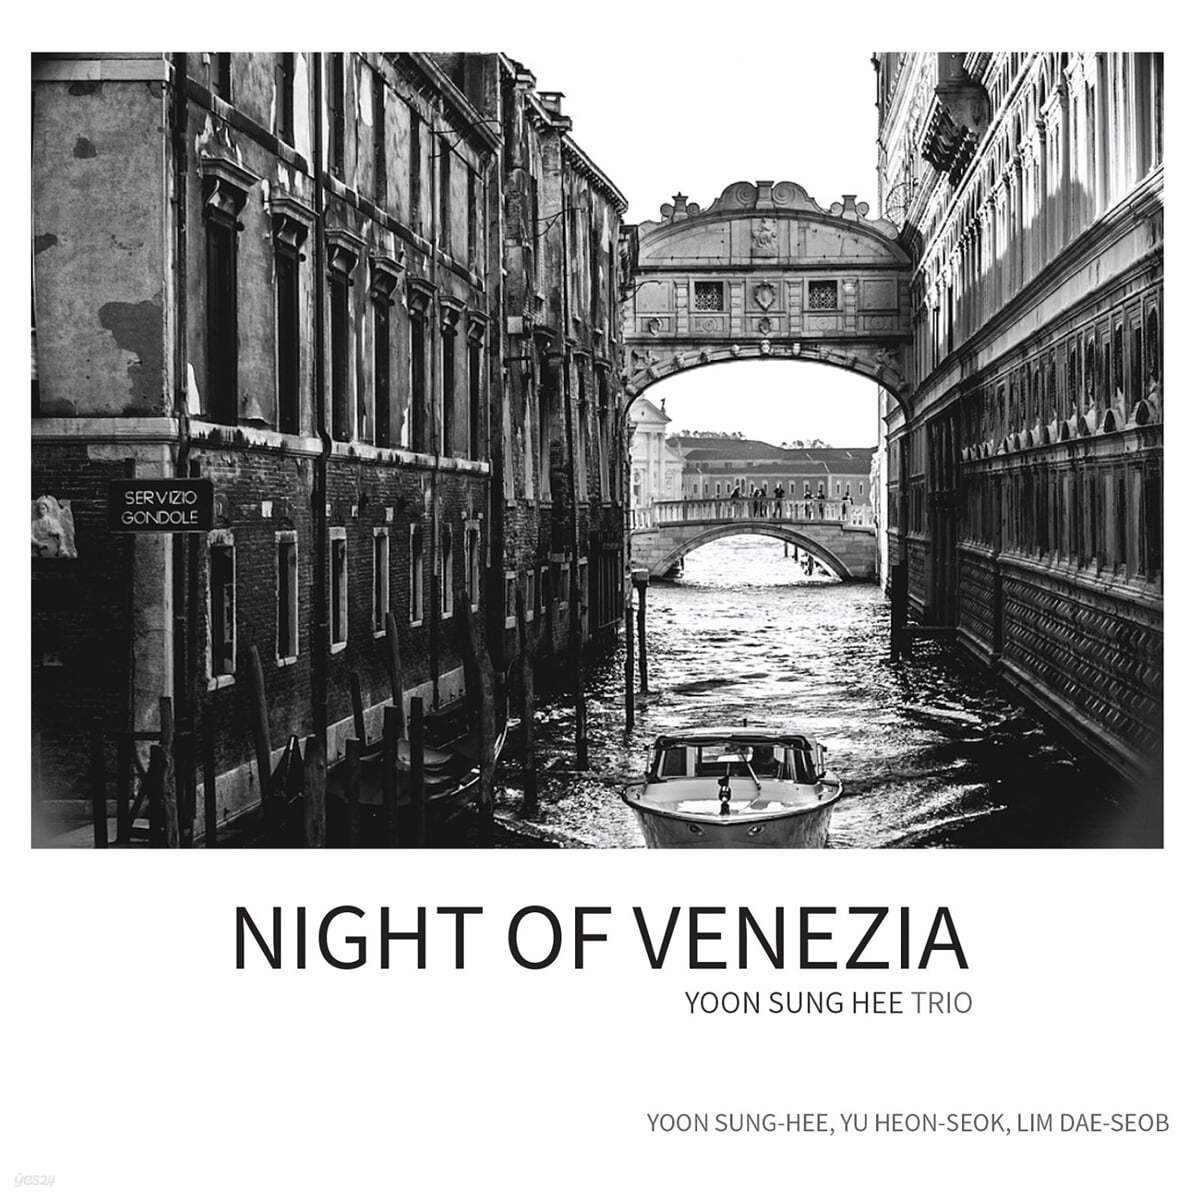 윤성희 트리오 - Night of Venezia 